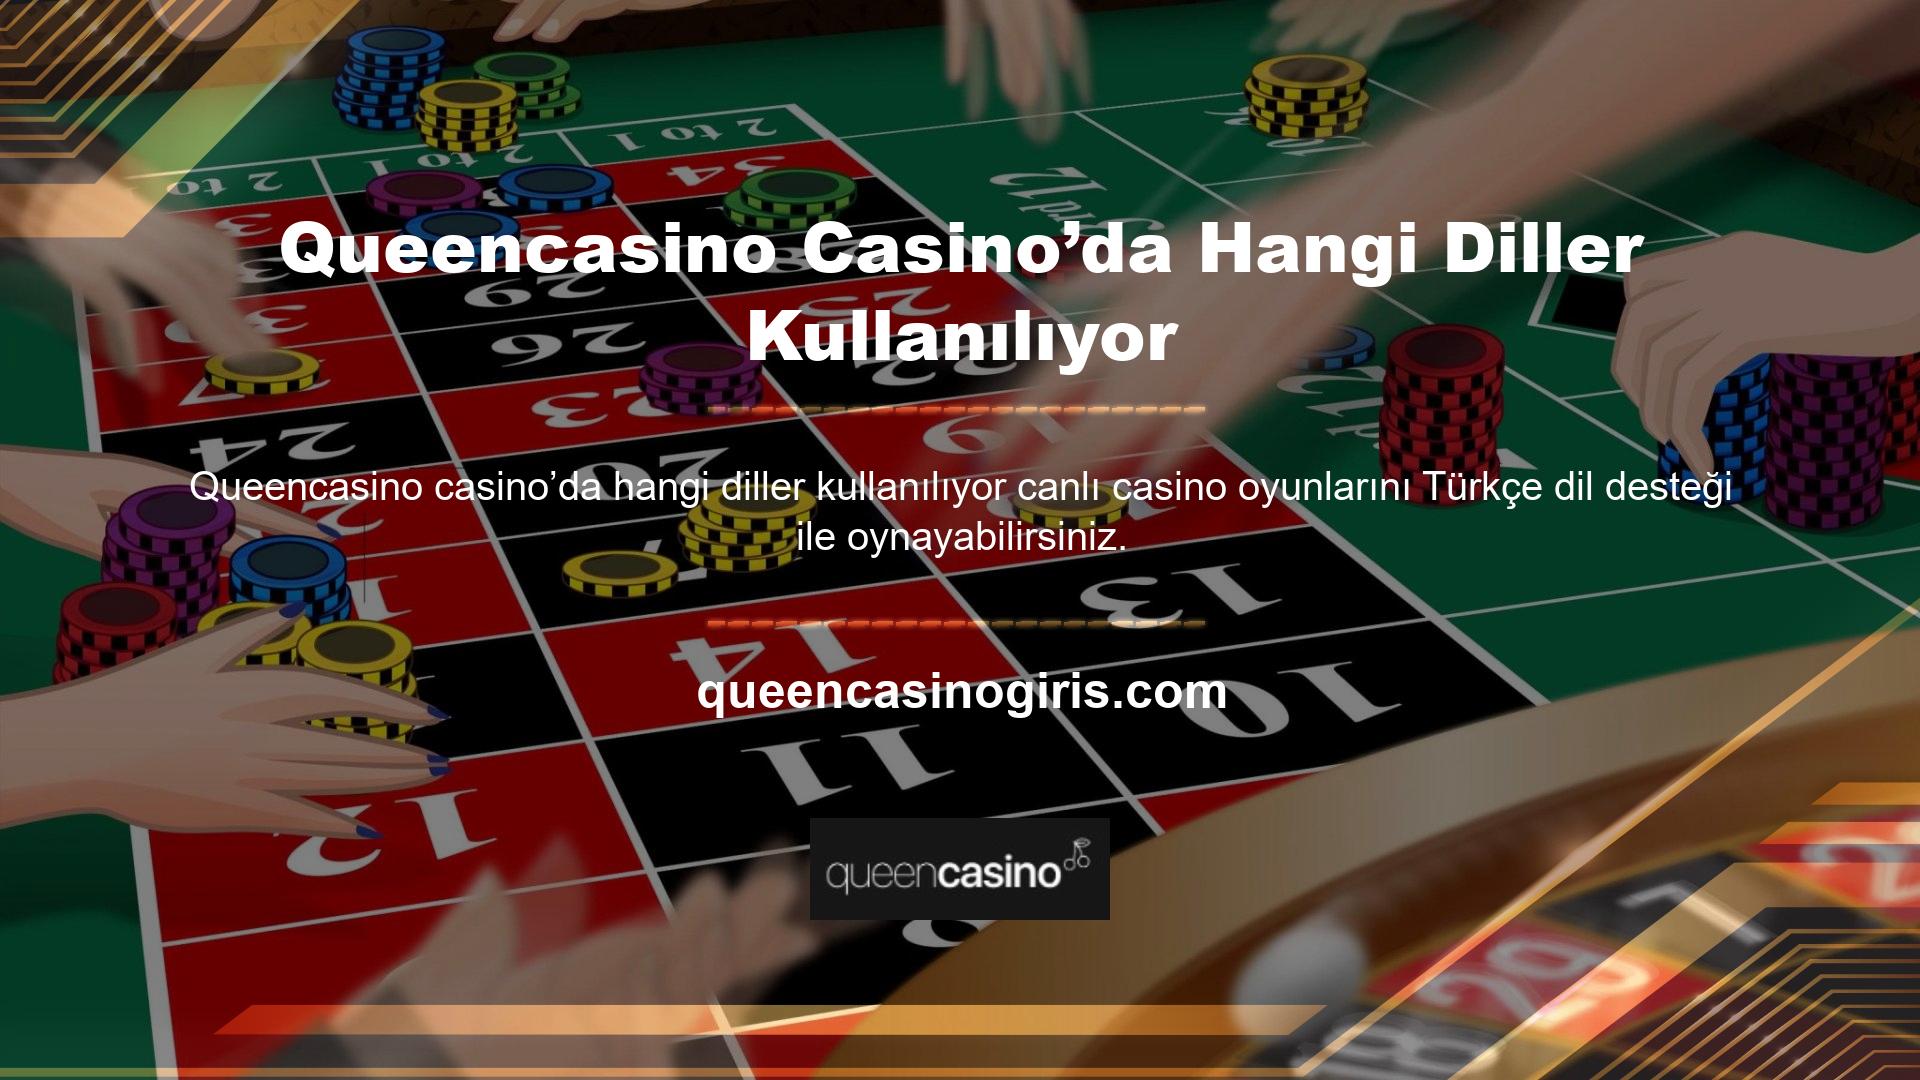 Türkçe olarak sunulan oyun seçenekleri arasında rulet, blackjack gibi her türlü site içeriği bulunmaktadır